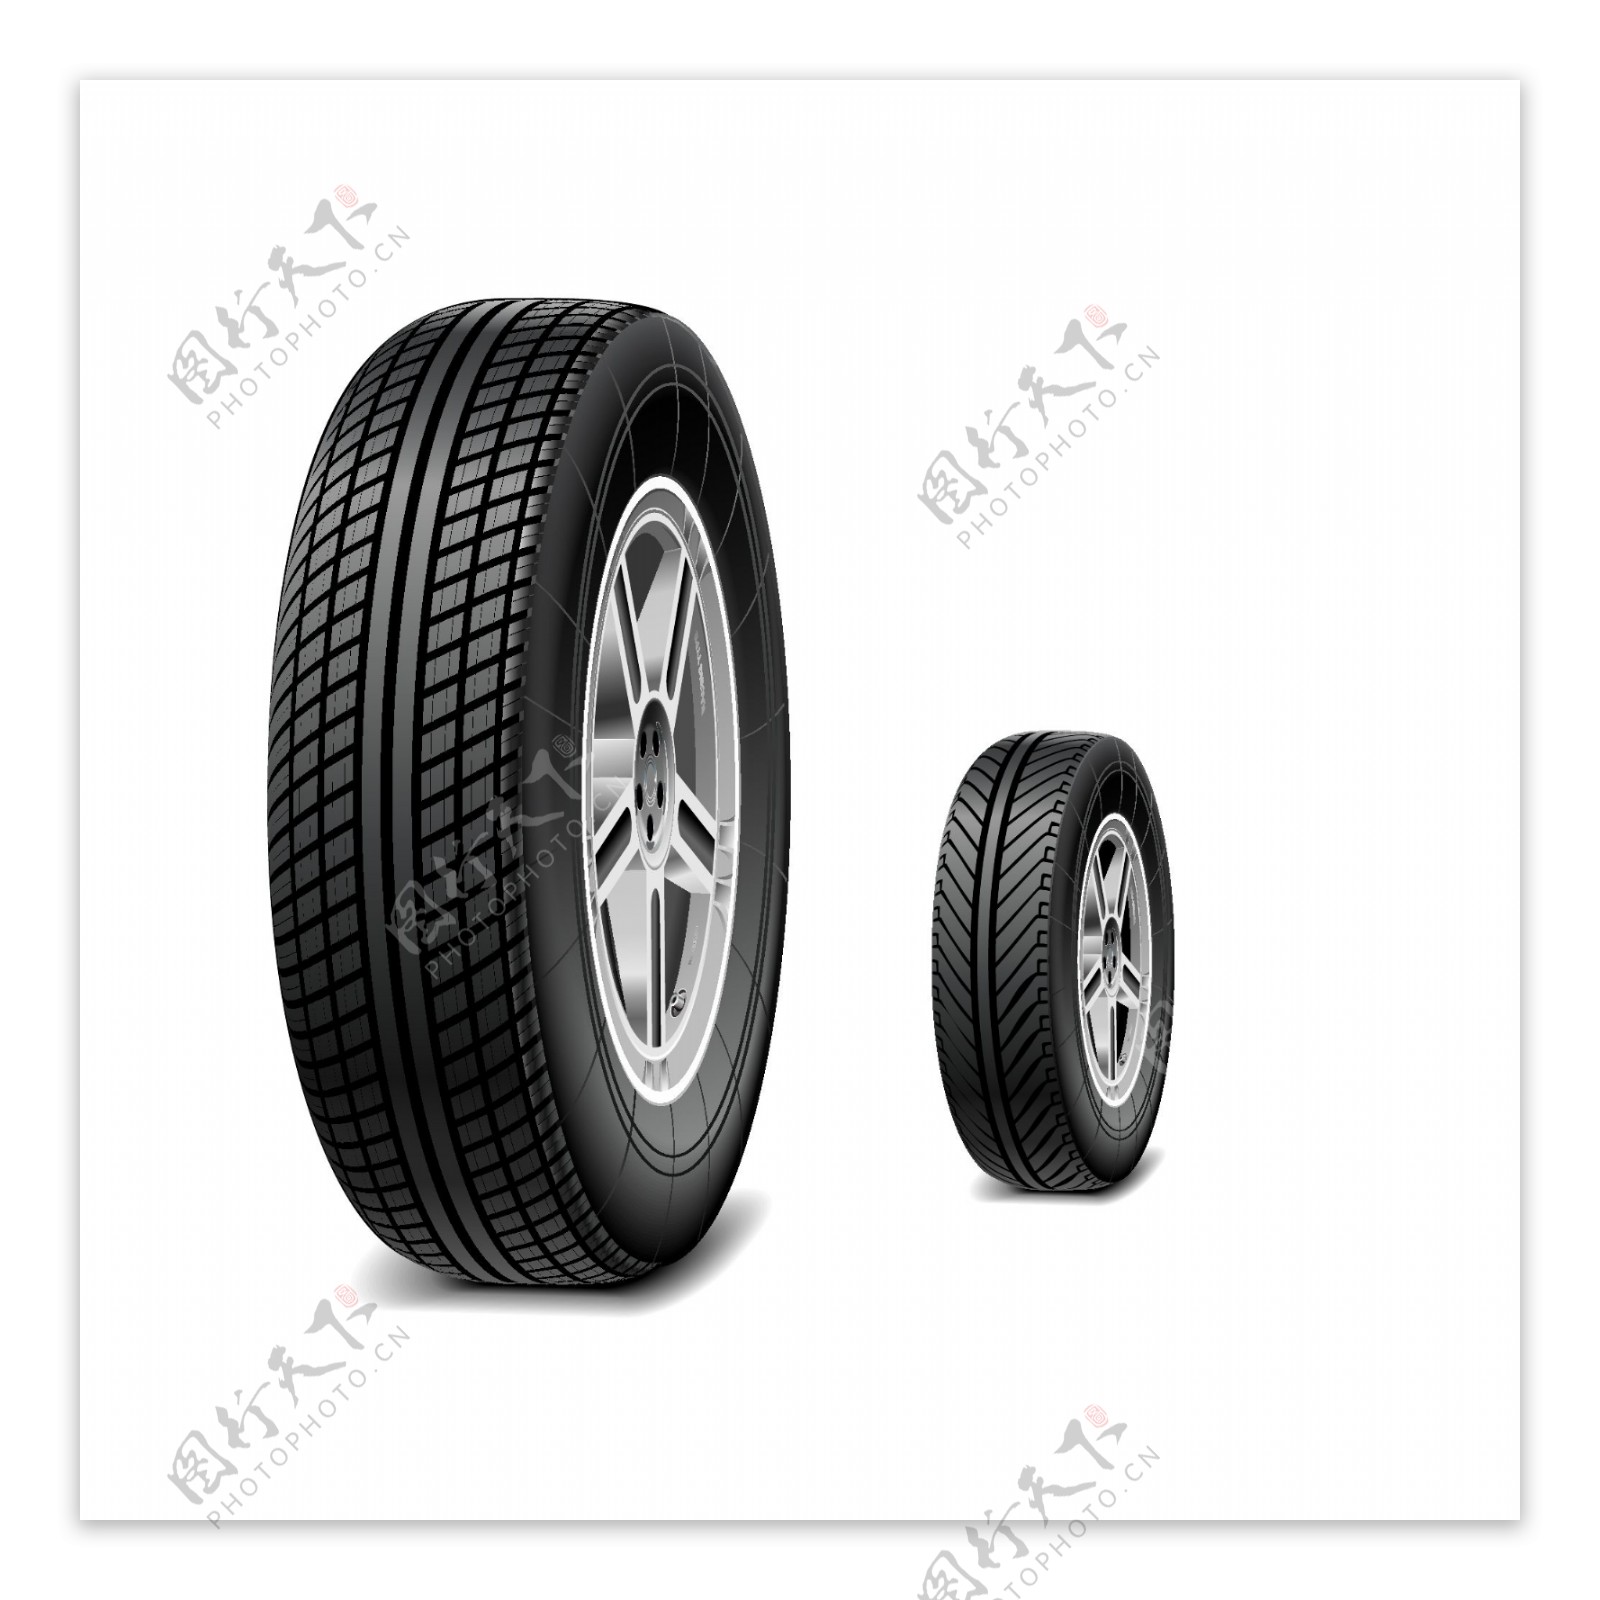 两款黑色逼真轮胎设计矢量素材